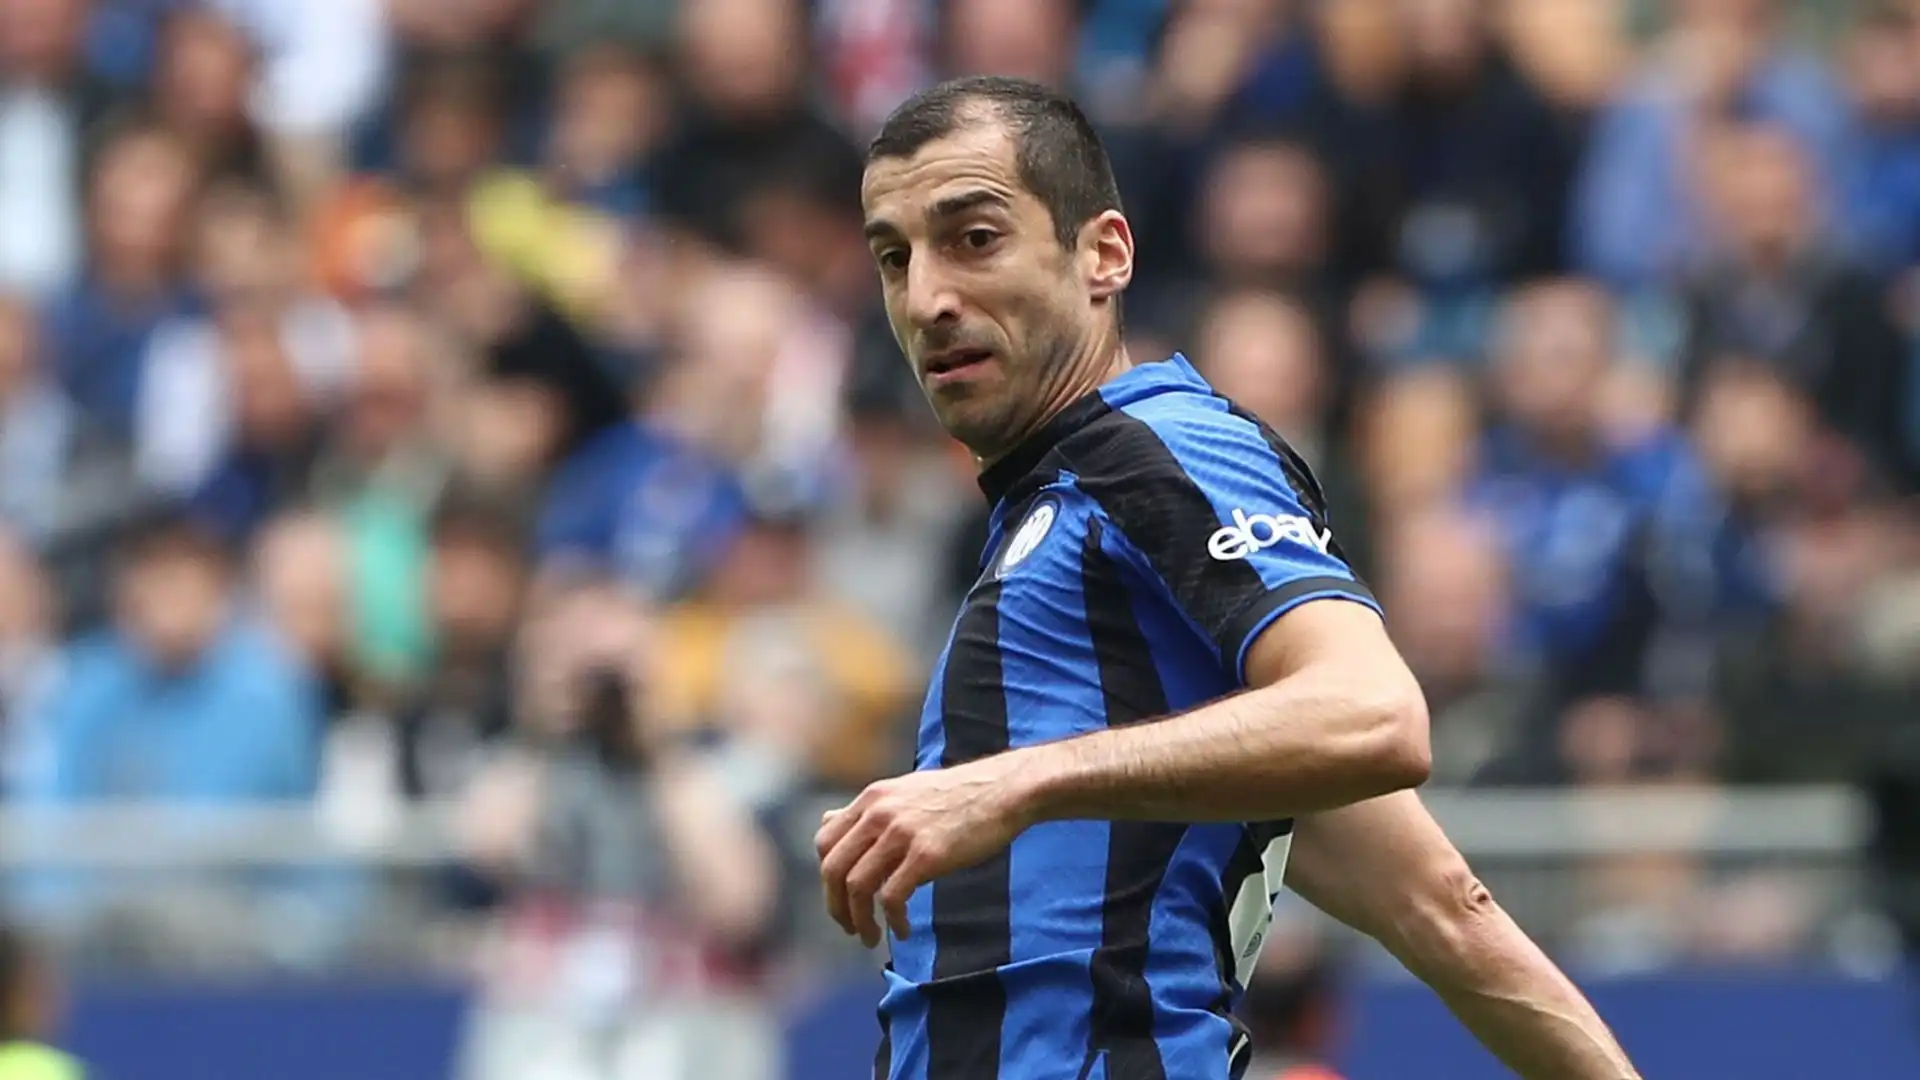 Il centrocampista armeno, arrivato a parametro zero la scorsa stagione, potrebbe lasciare l'Inter dopo un anno